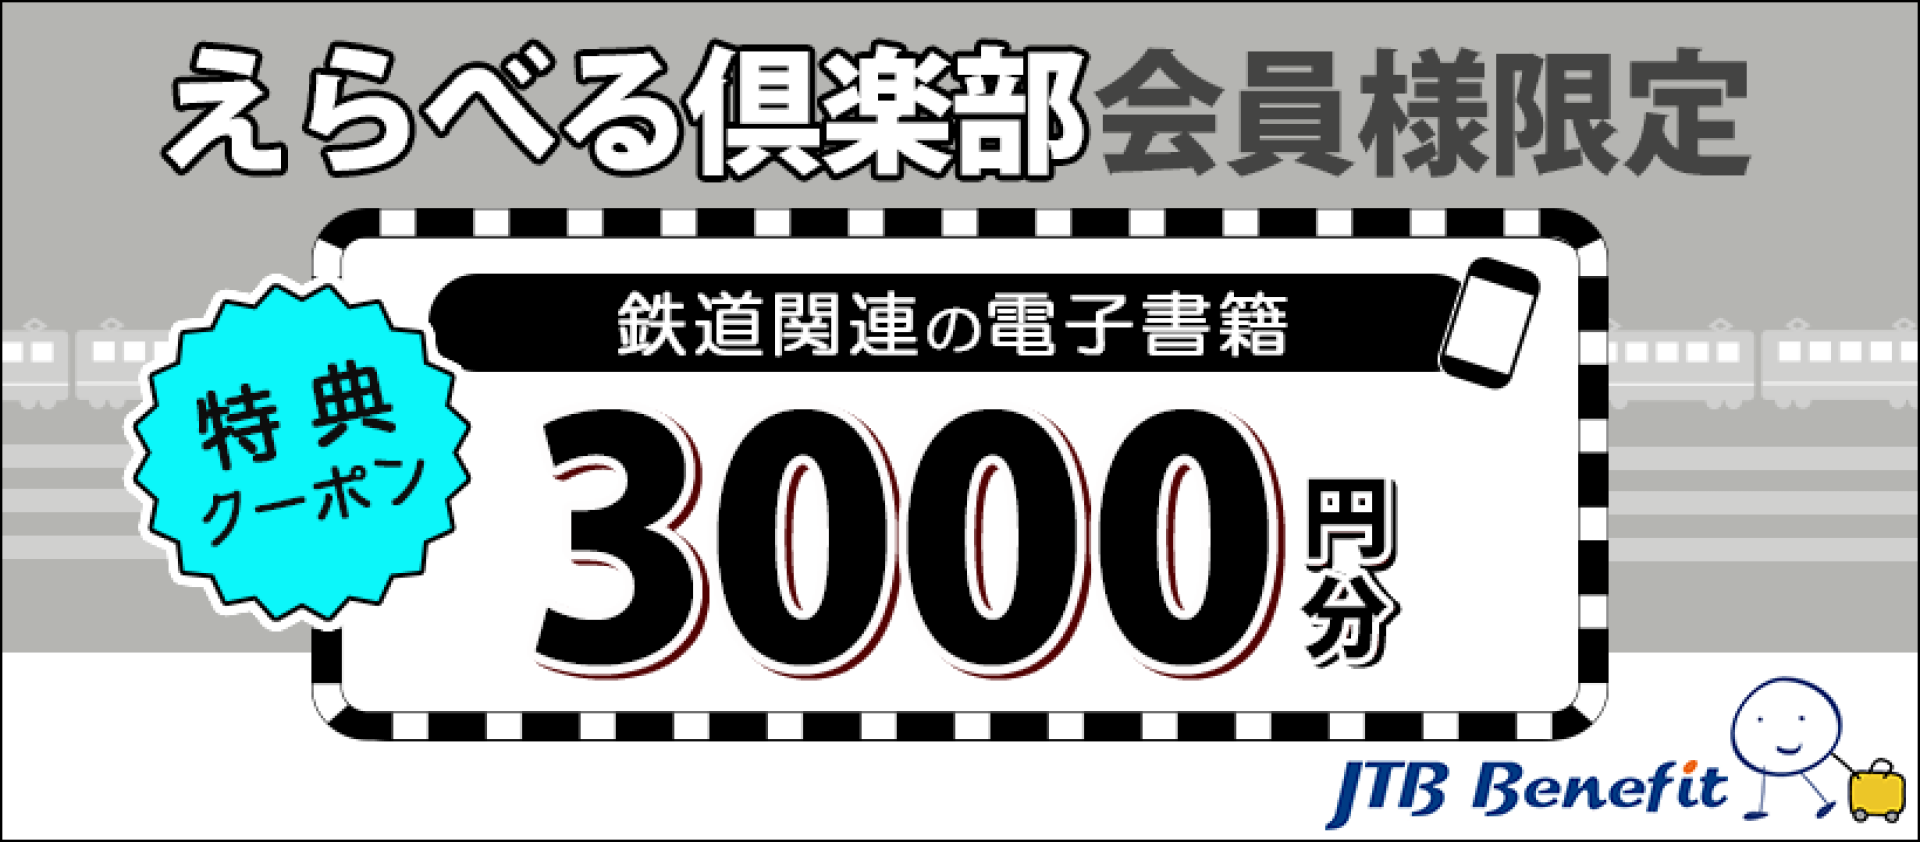 えらべる倶楽部会員様限定 『鉄道MOOK』電子書籍3000円分特典クーポン